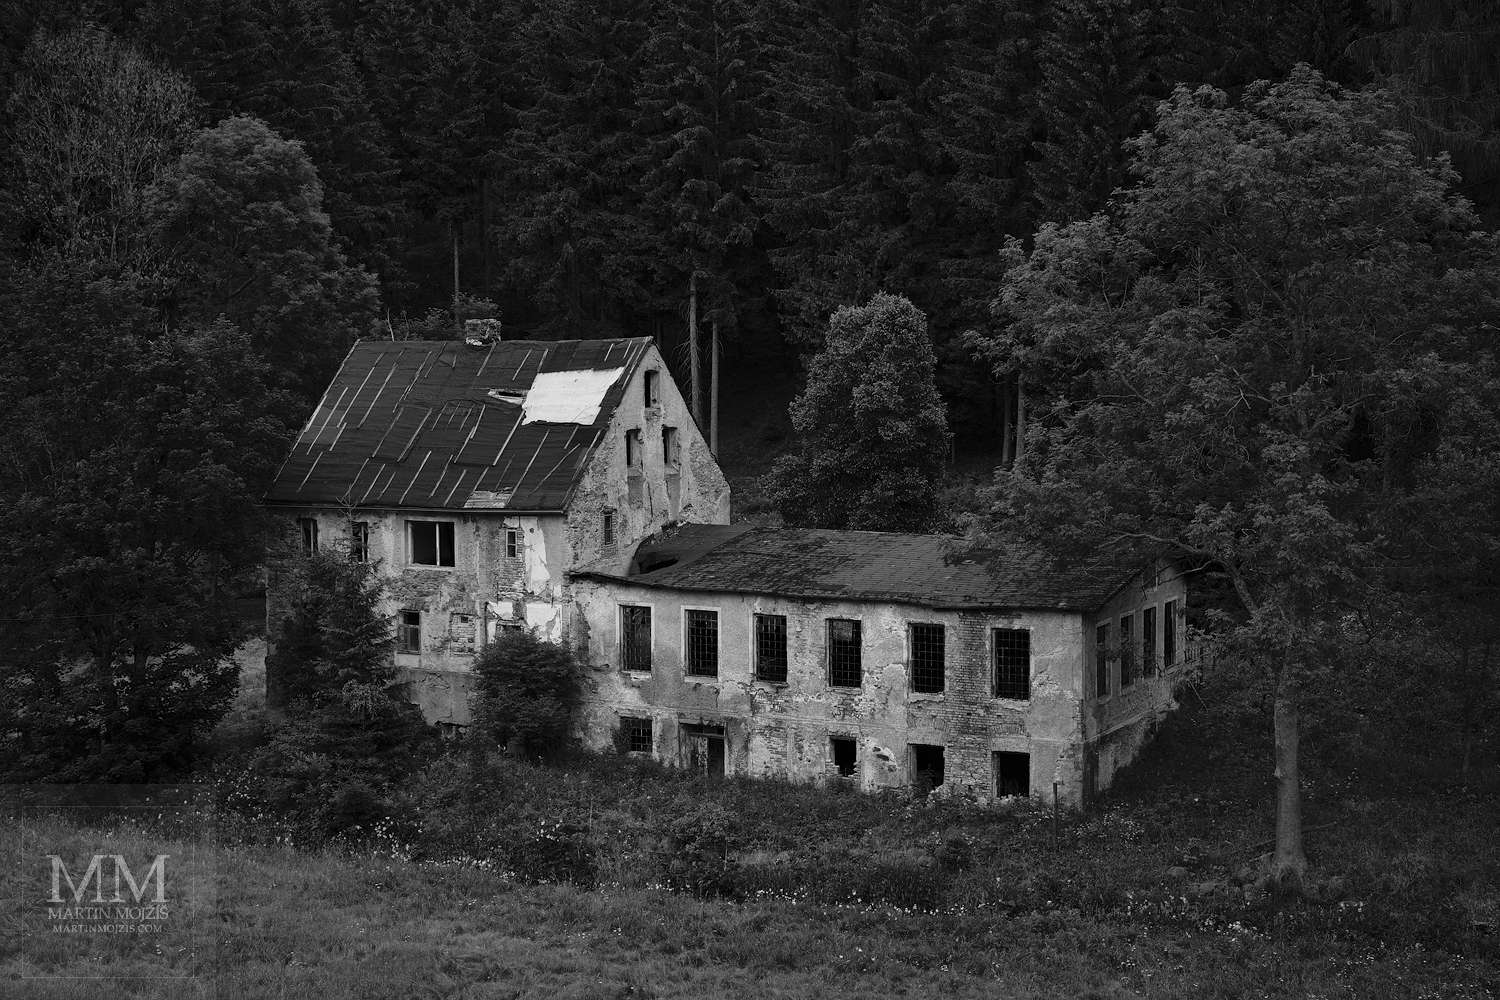 Velkoformátová umělecká černobílá fotografie domu v údolí. Martin Mojžíš.